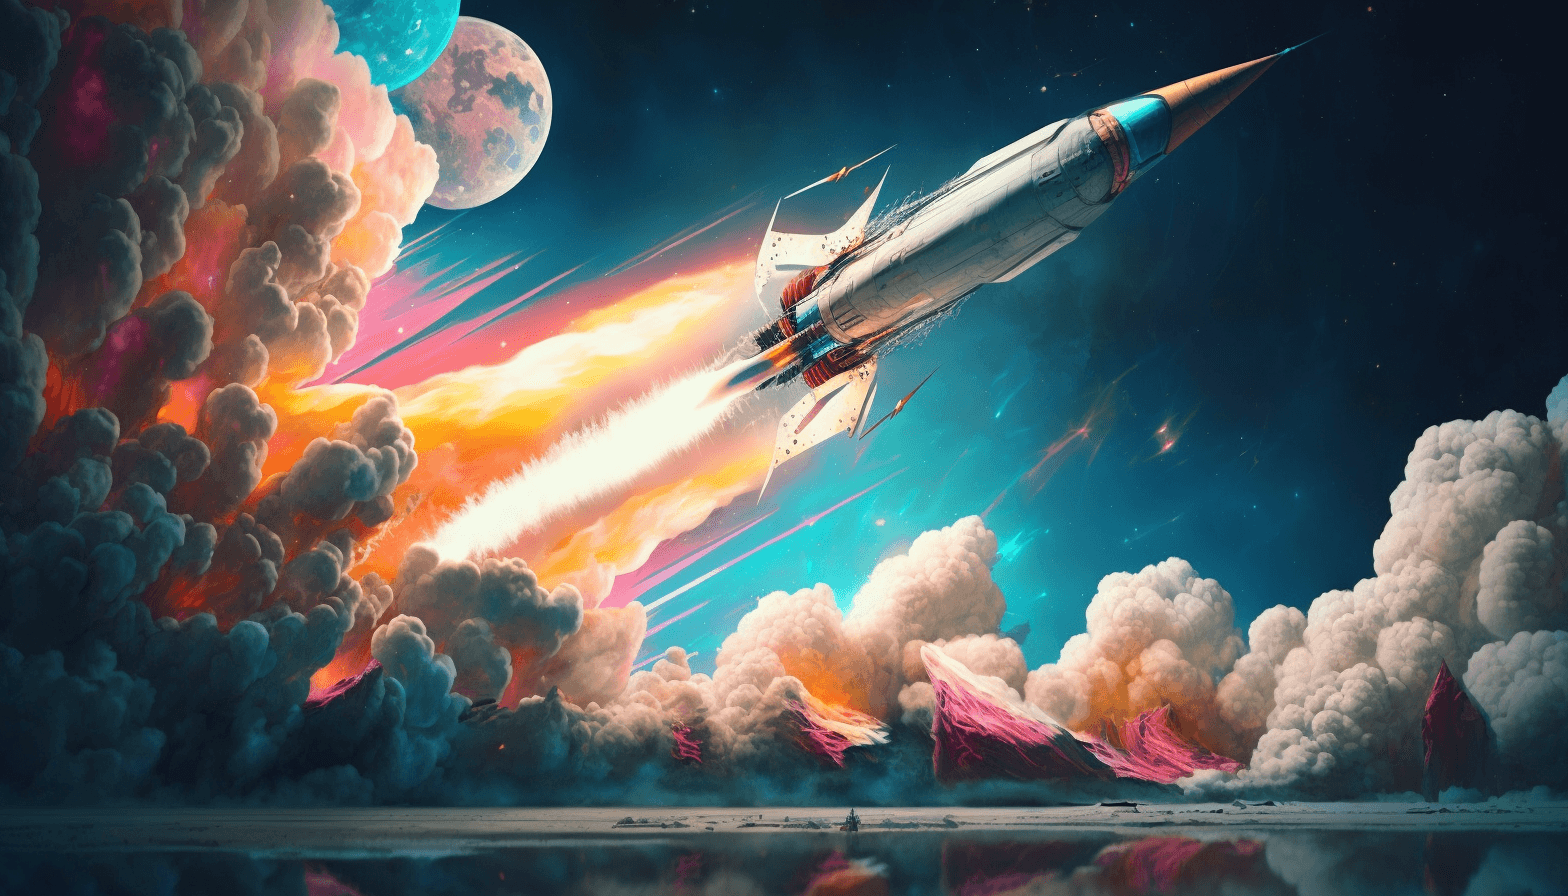 launching the spaceship